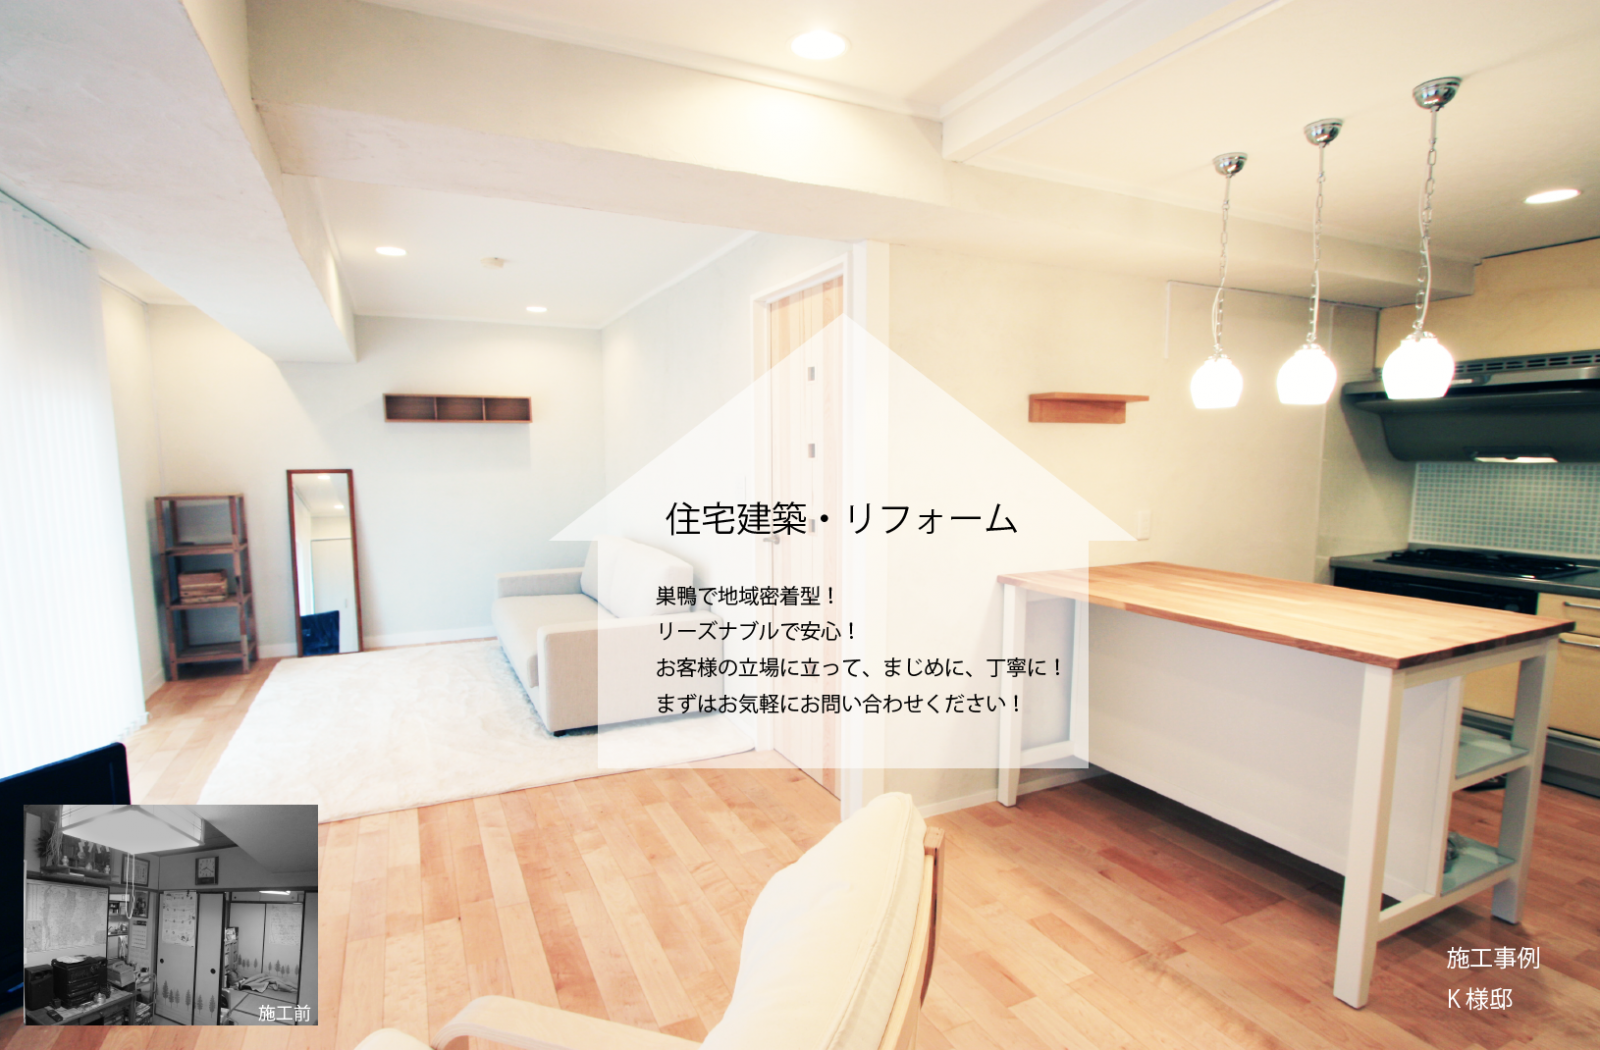 株式会社さくら工房 東京都豊島区で良心的な信頼できる建築 リフォーム シェアハウス 宿泊施設の会社です